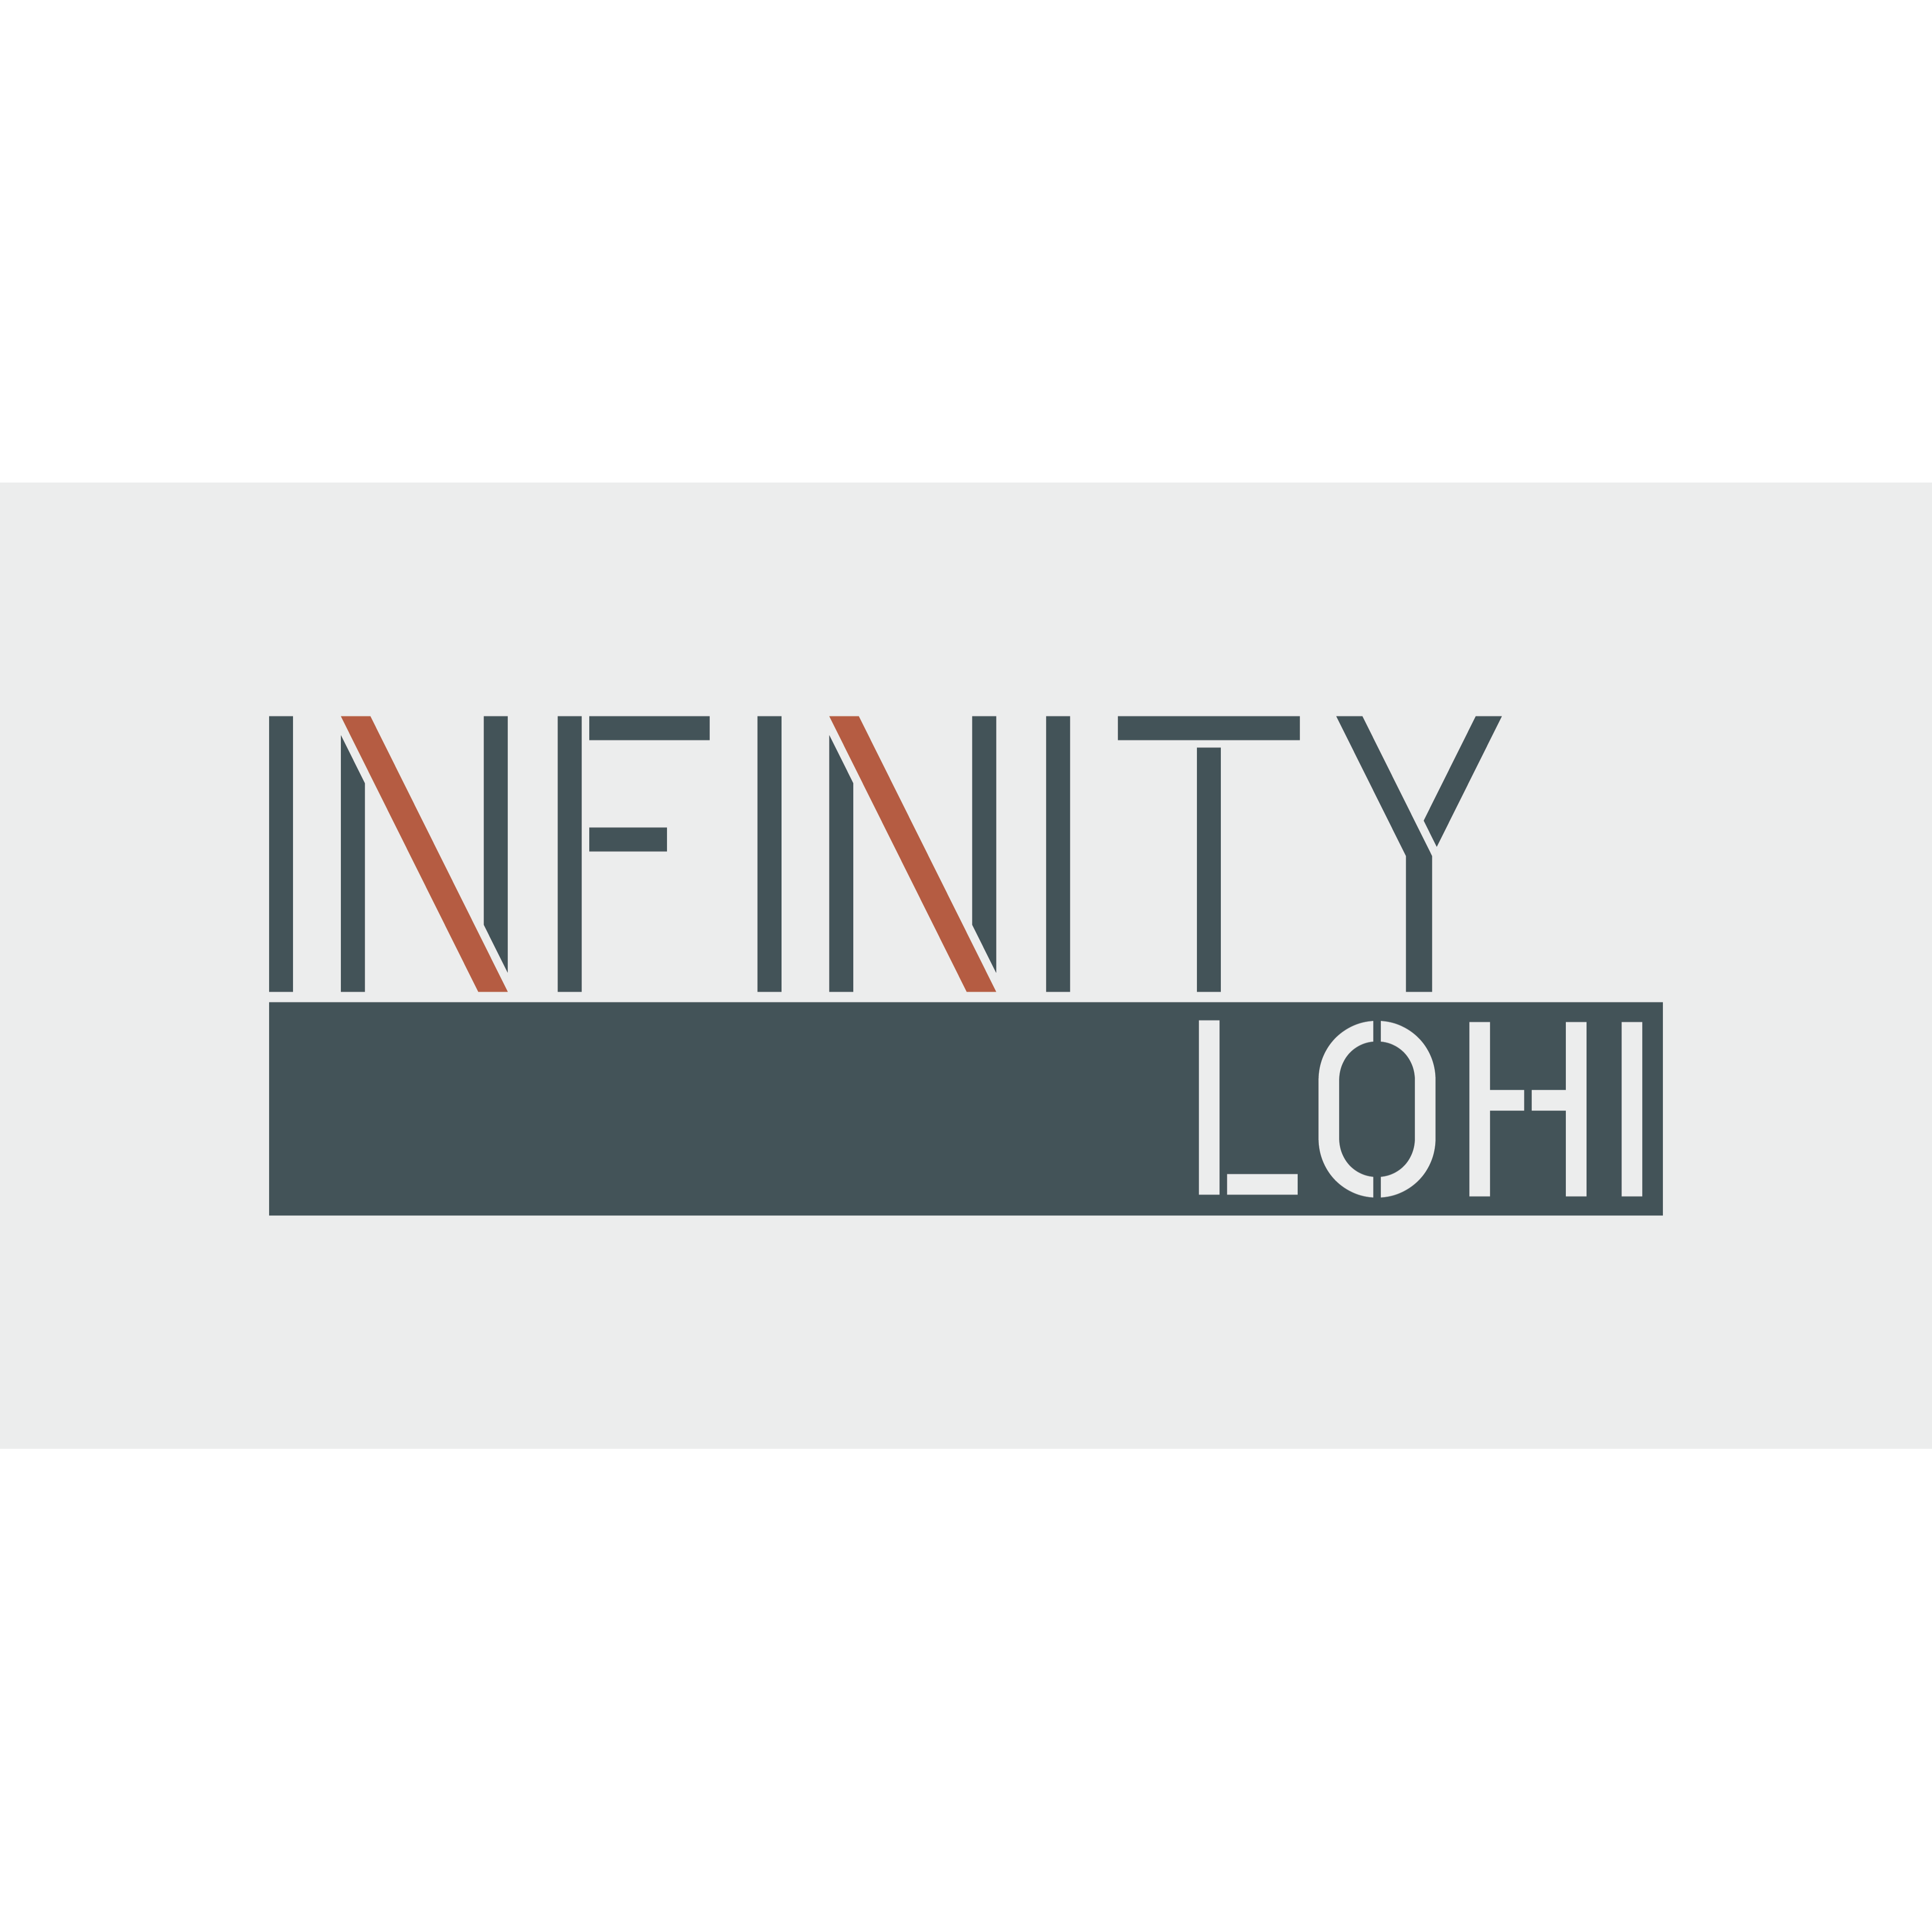 Infinity LoHi